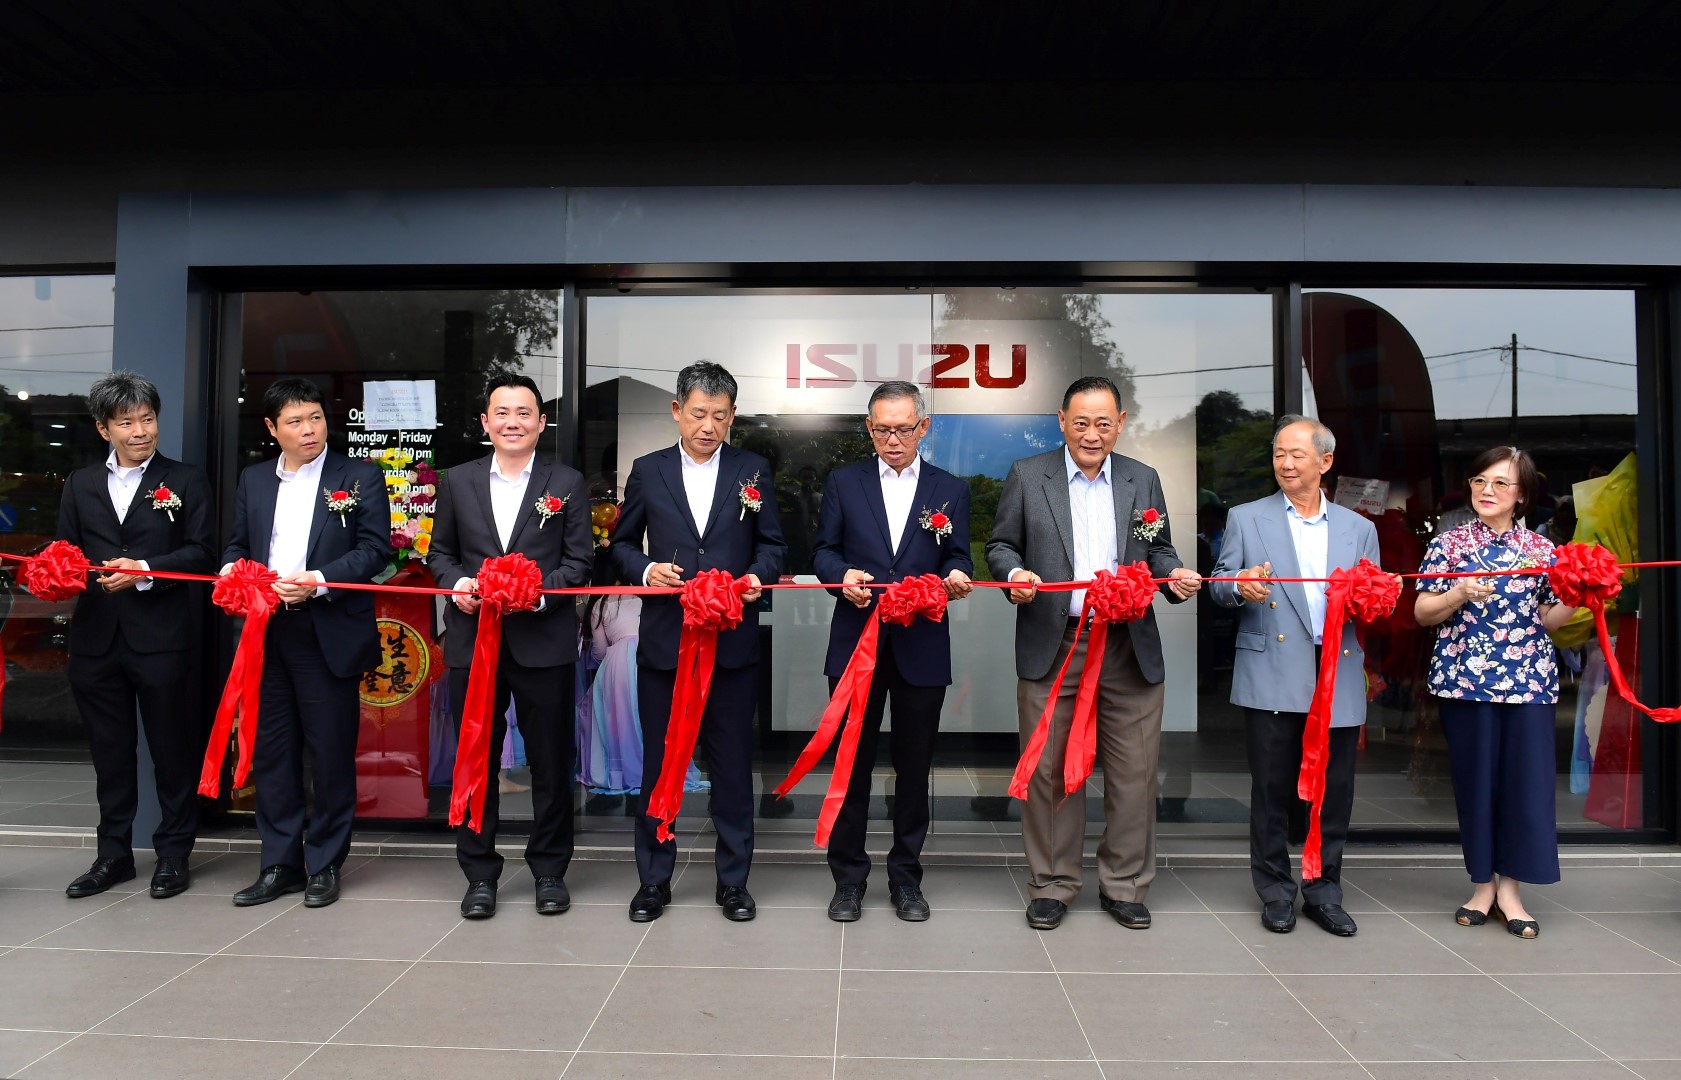 Revamped Isuzu Temerloh 3S Centre is now open